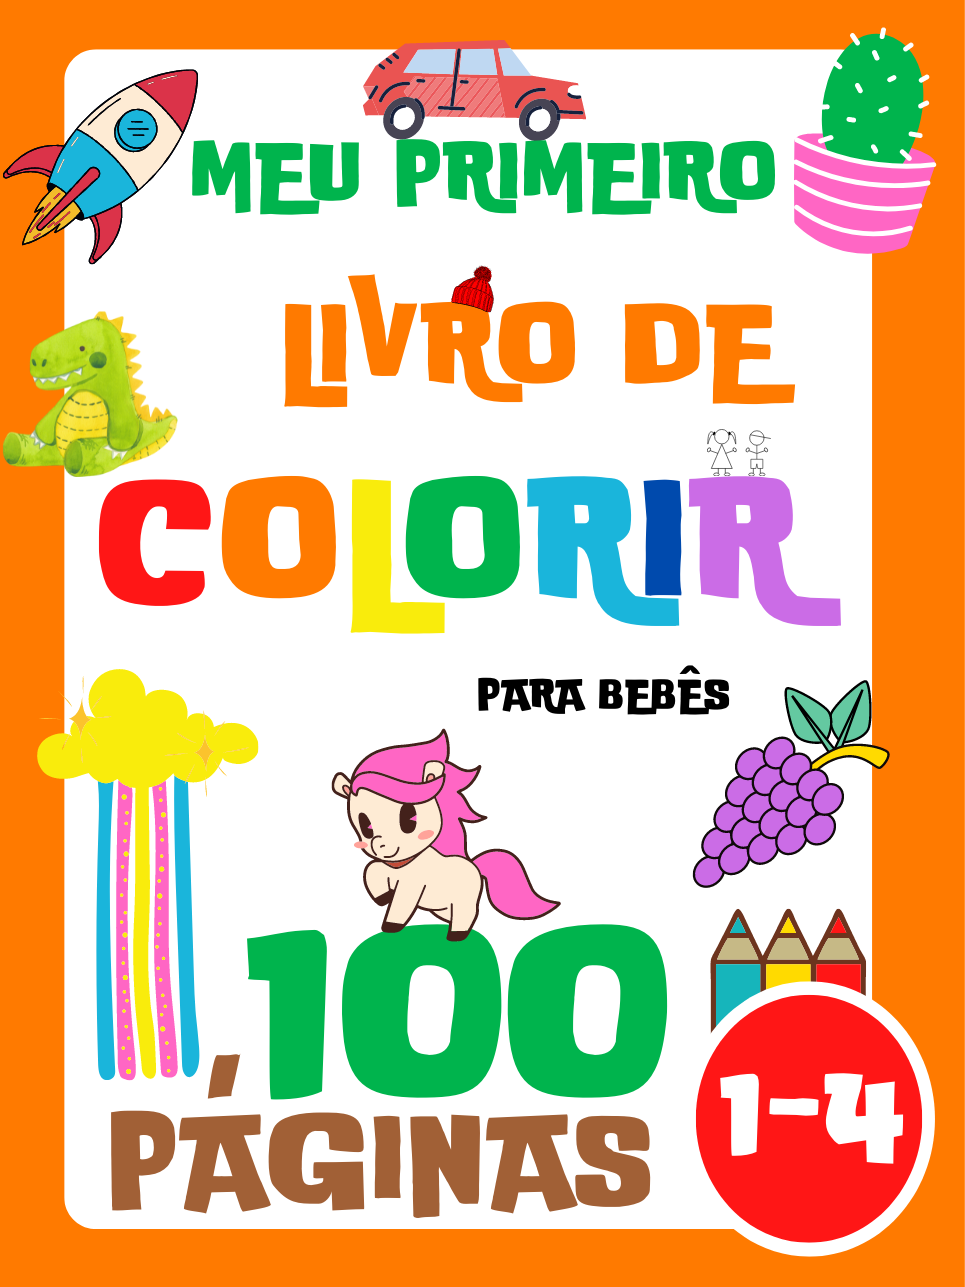 Meu Primeiro Livro de Colorir para Bebês